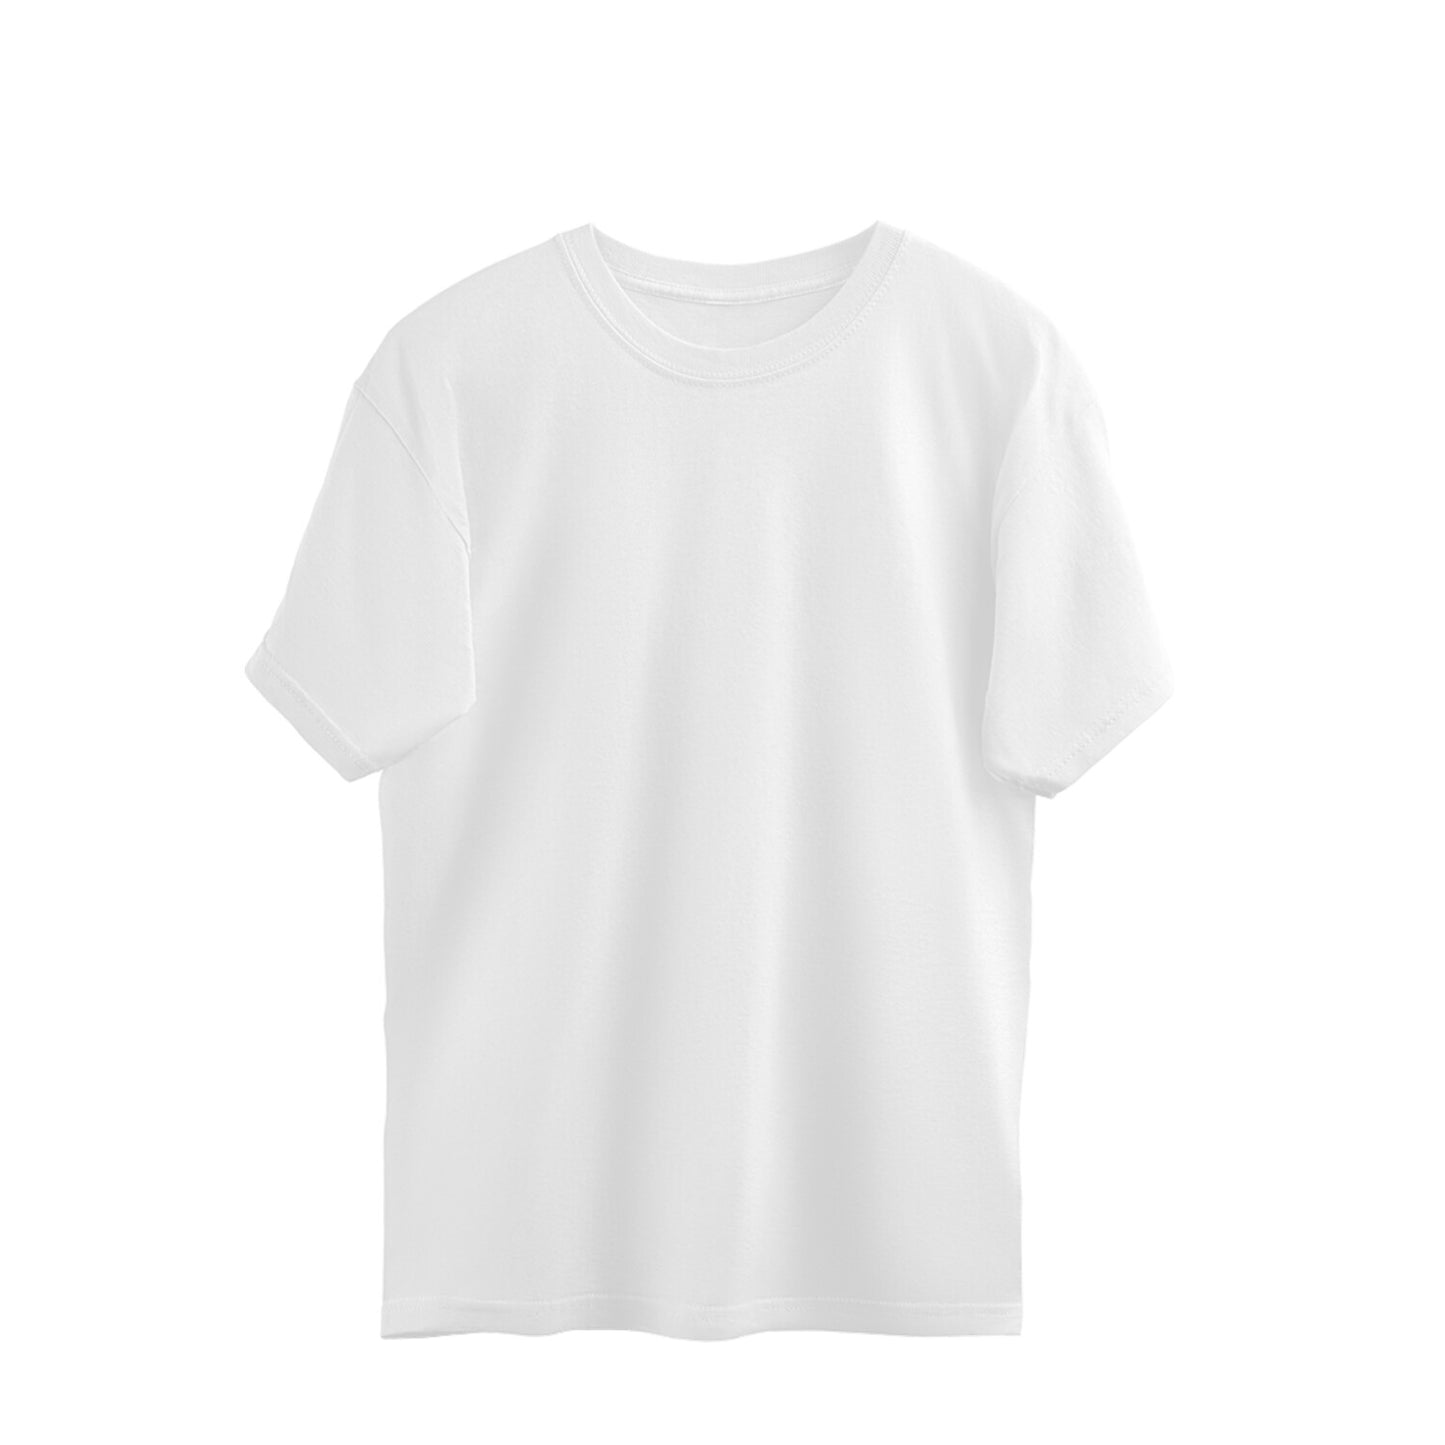 White - Oversized T-shirts